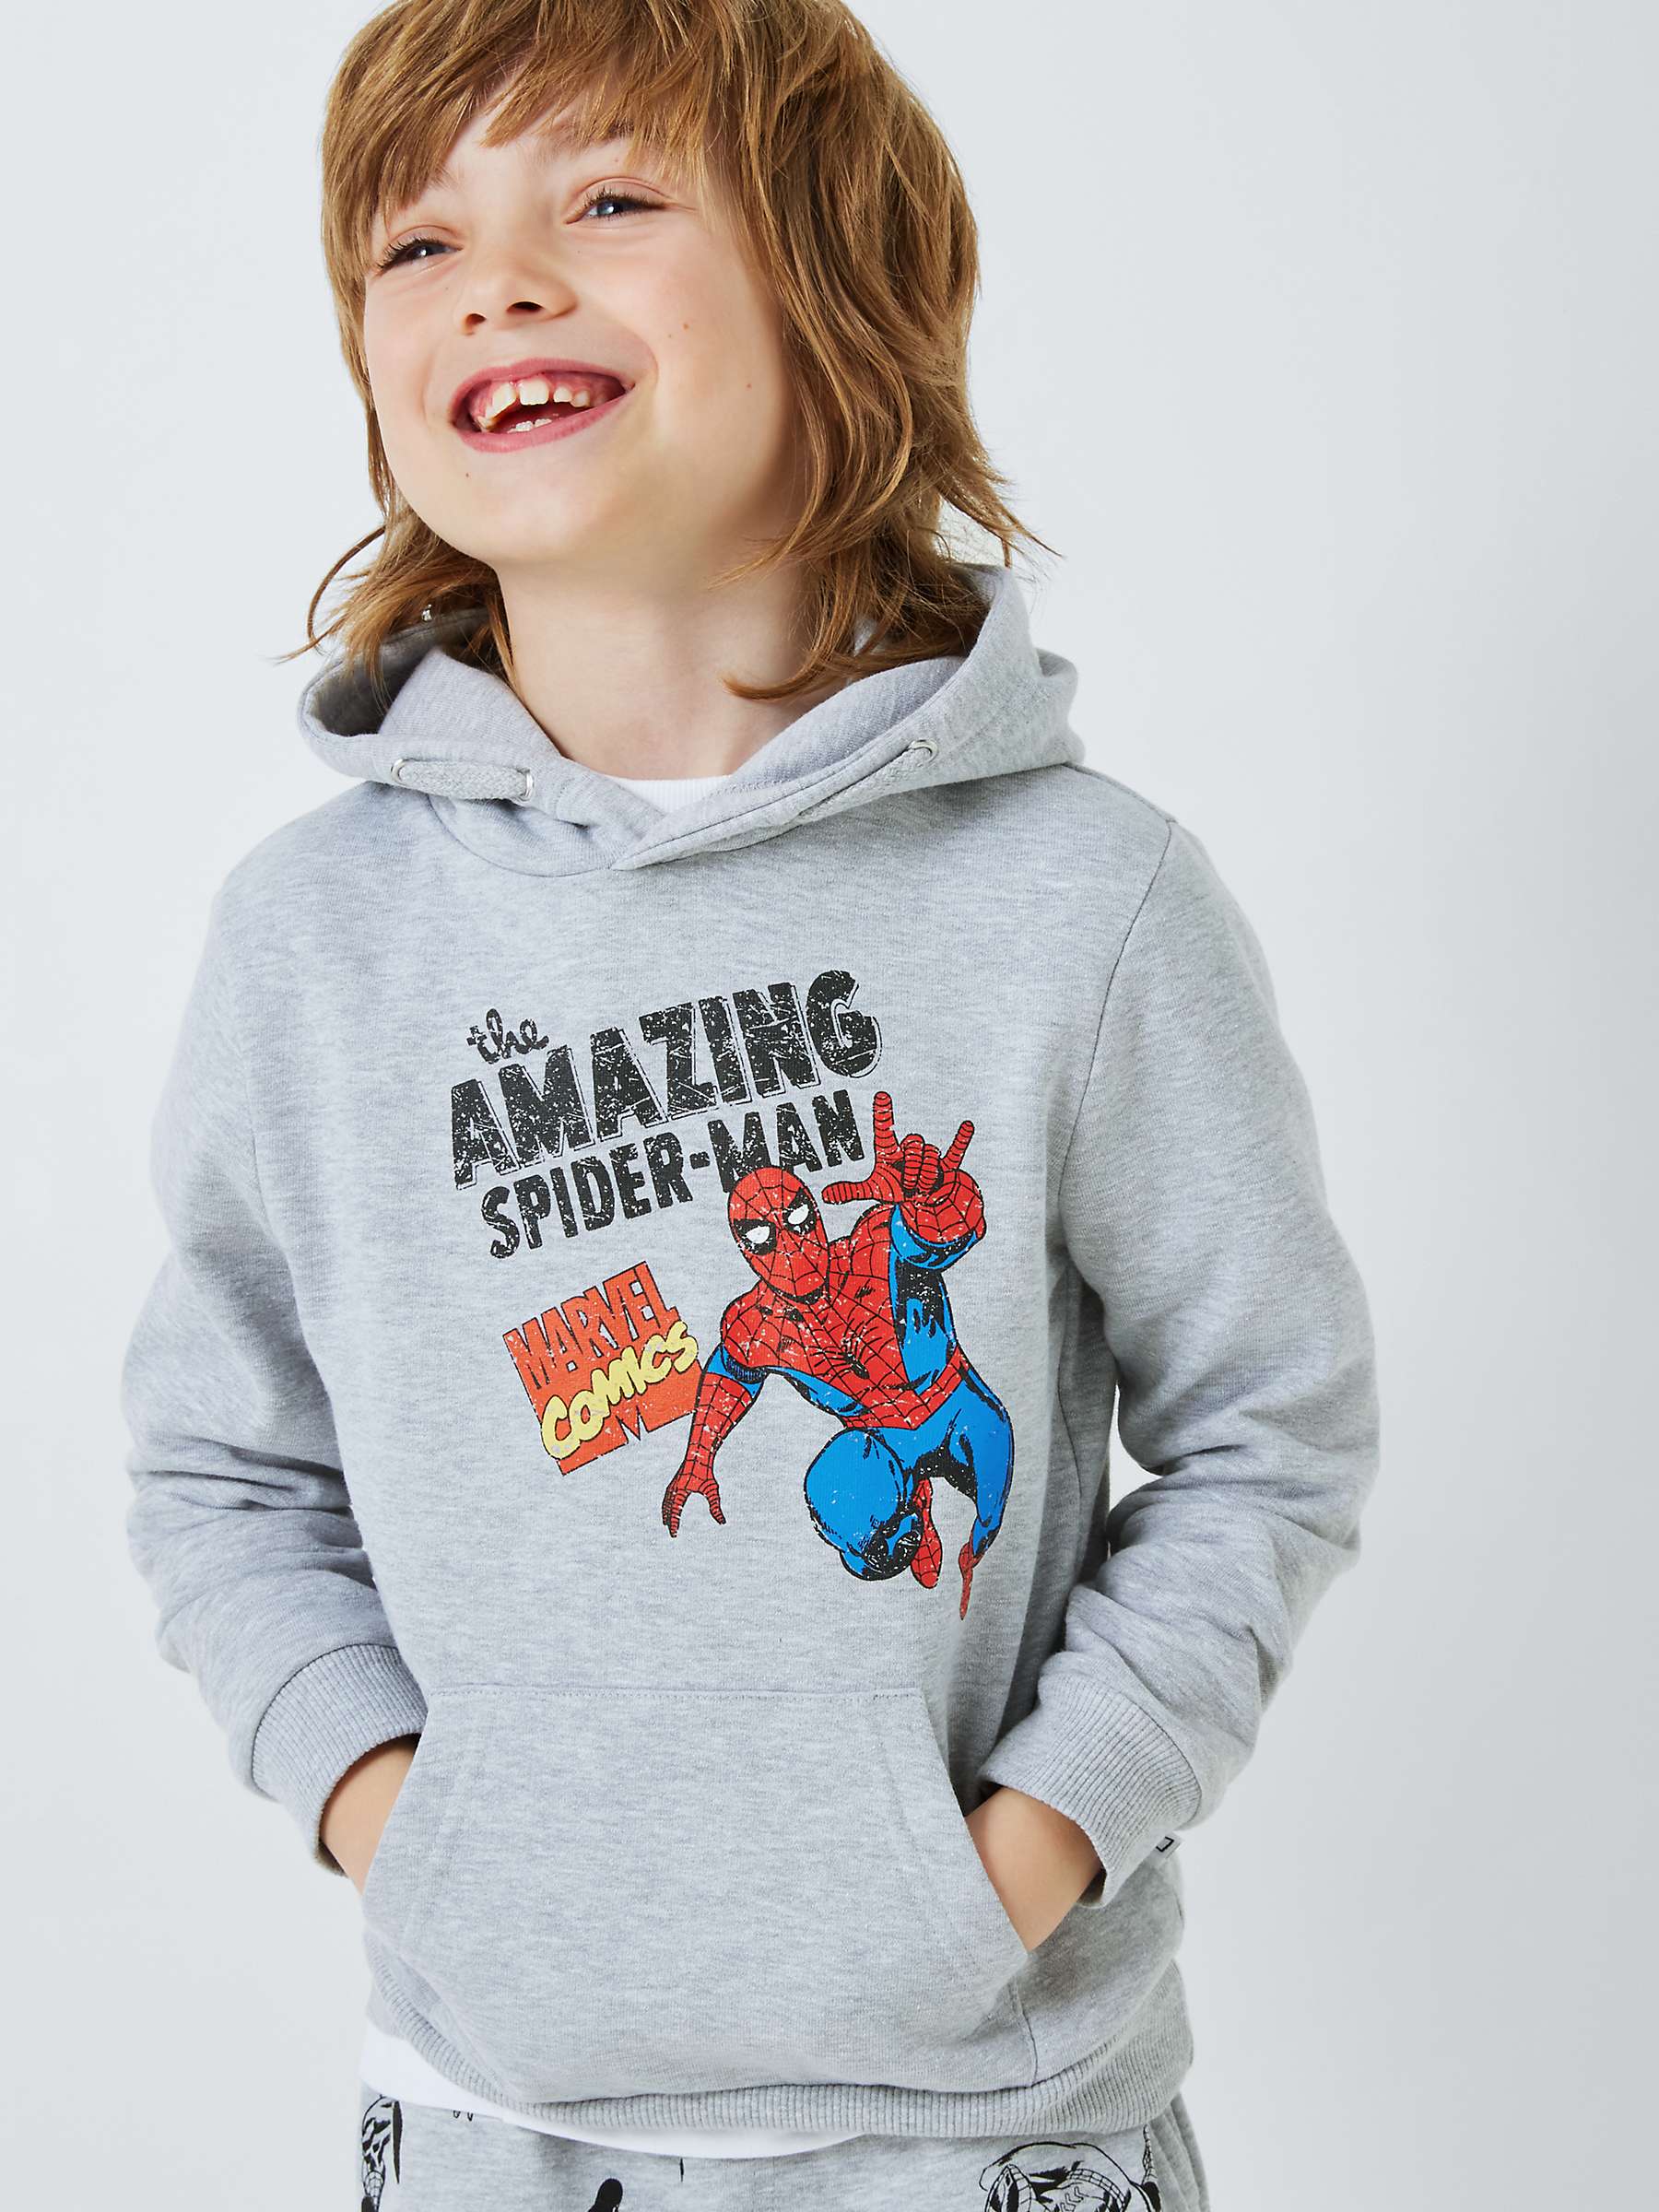 Buy Brand Threads Kids' Spider-Man Hoodie, Grey Online at johnlewis.com